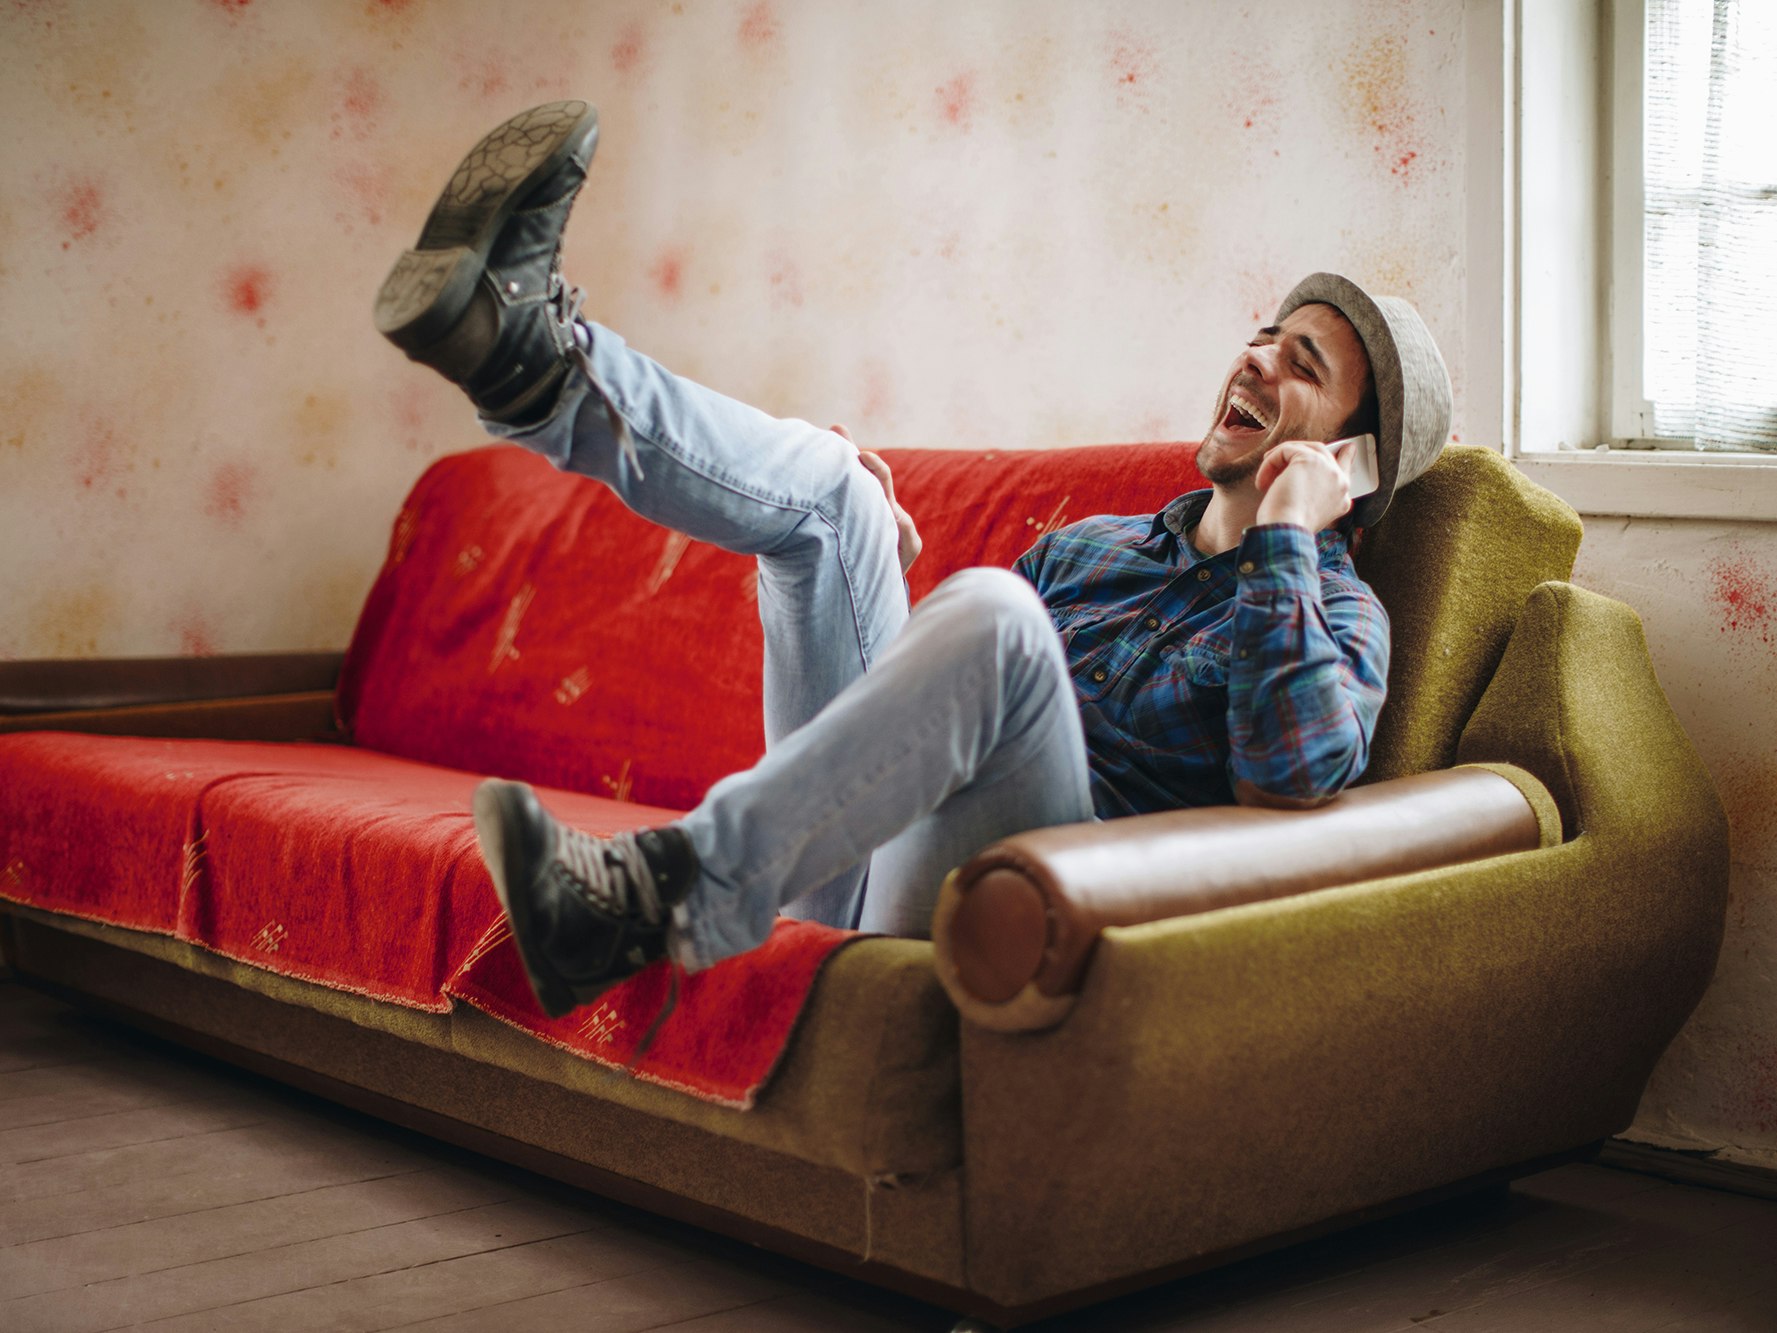 Bilde av en ung mann som sitter i en sofa. Prater i telefonen, og får tydeligvis en god beskjed. Kanskje sju rette i Lotto?